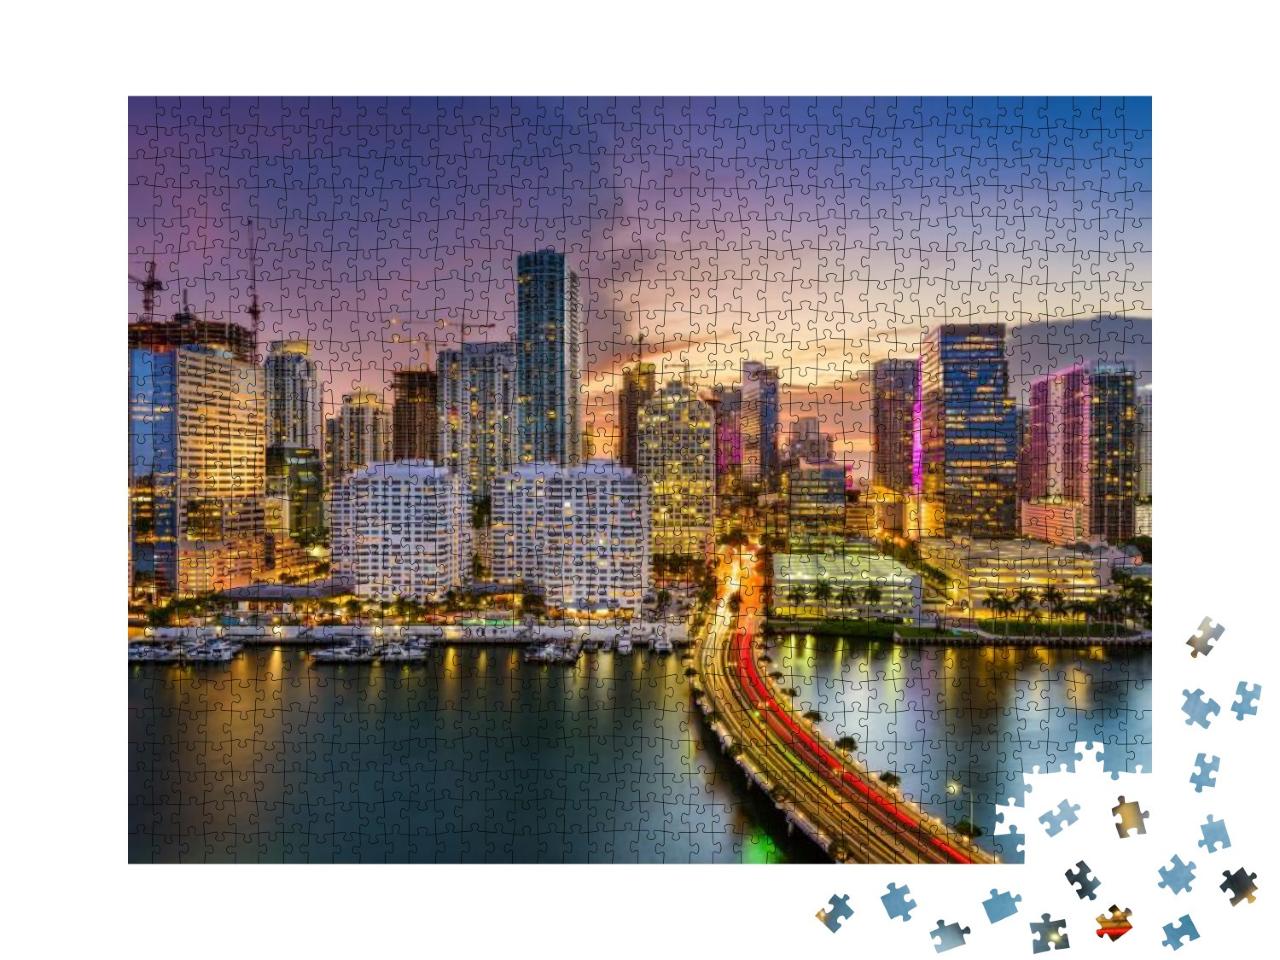 Miami, Florida, USA Skyline on Biscayne Bay... Jigsaw Puzzle with 1000 pieces